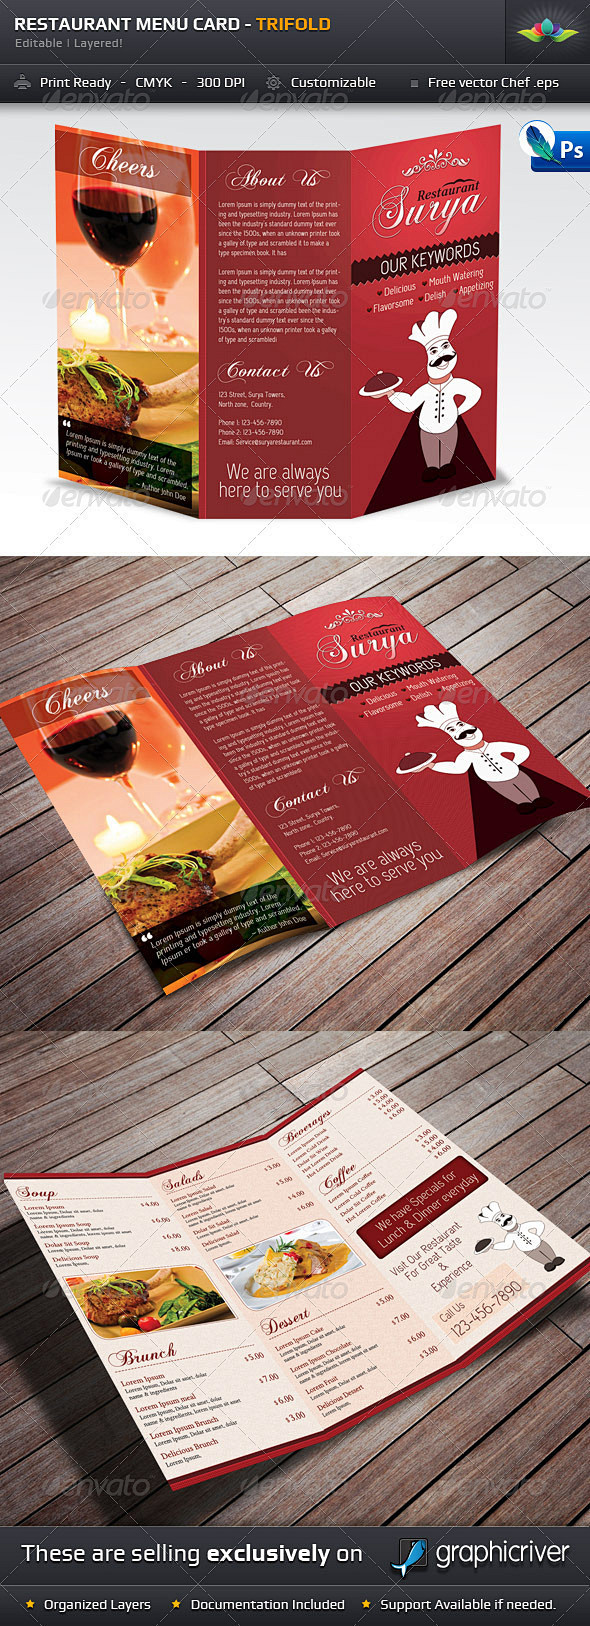 打印模板 - 餐厅菜单卡 - 三折| G...